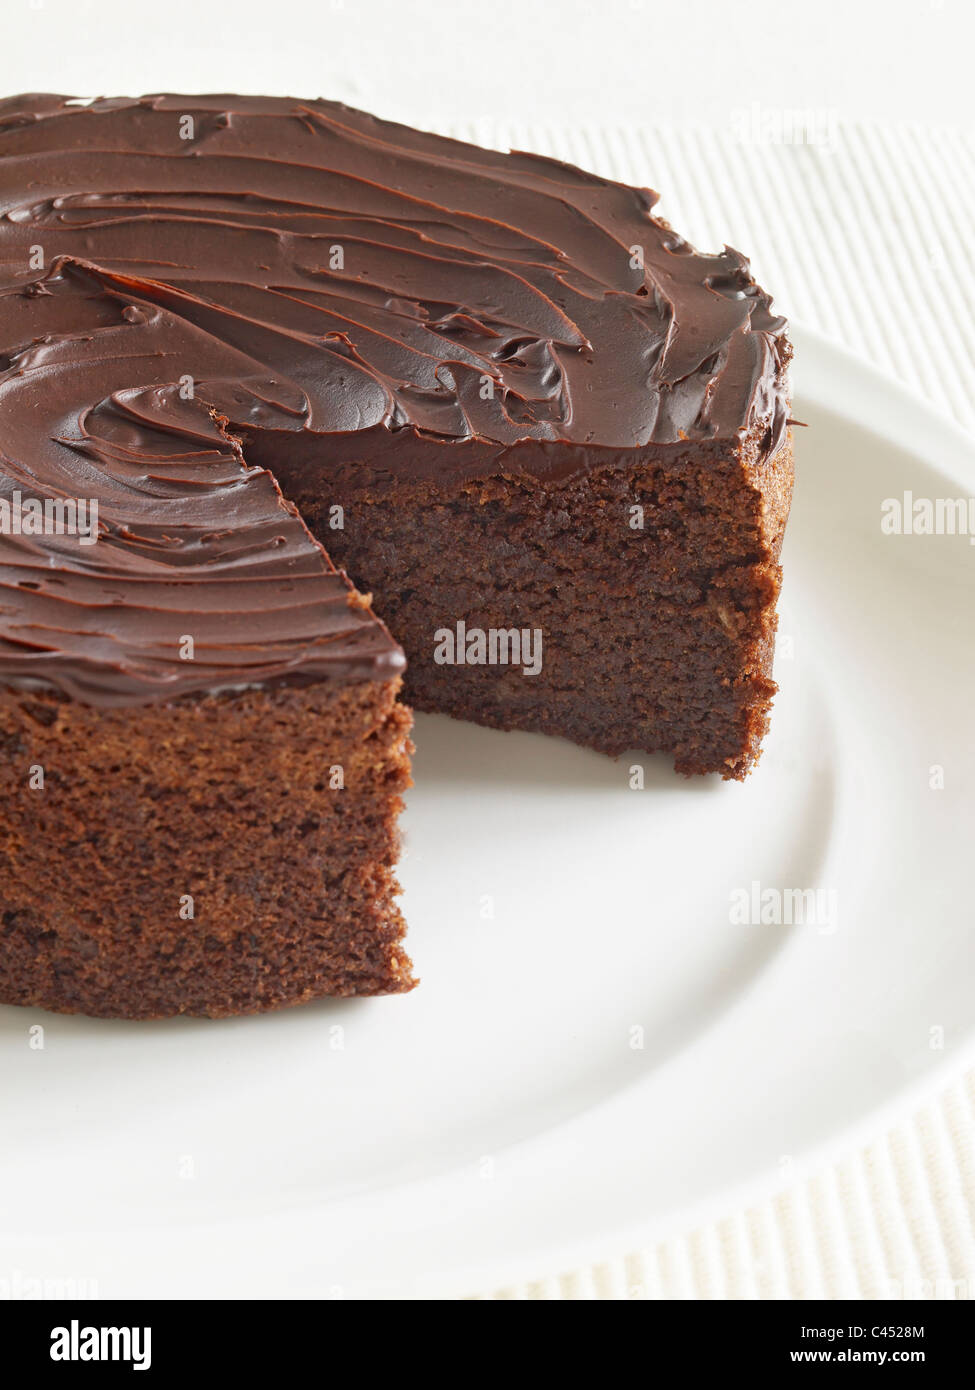 Chocolat amande gâteaux, close-up Banque D'Images